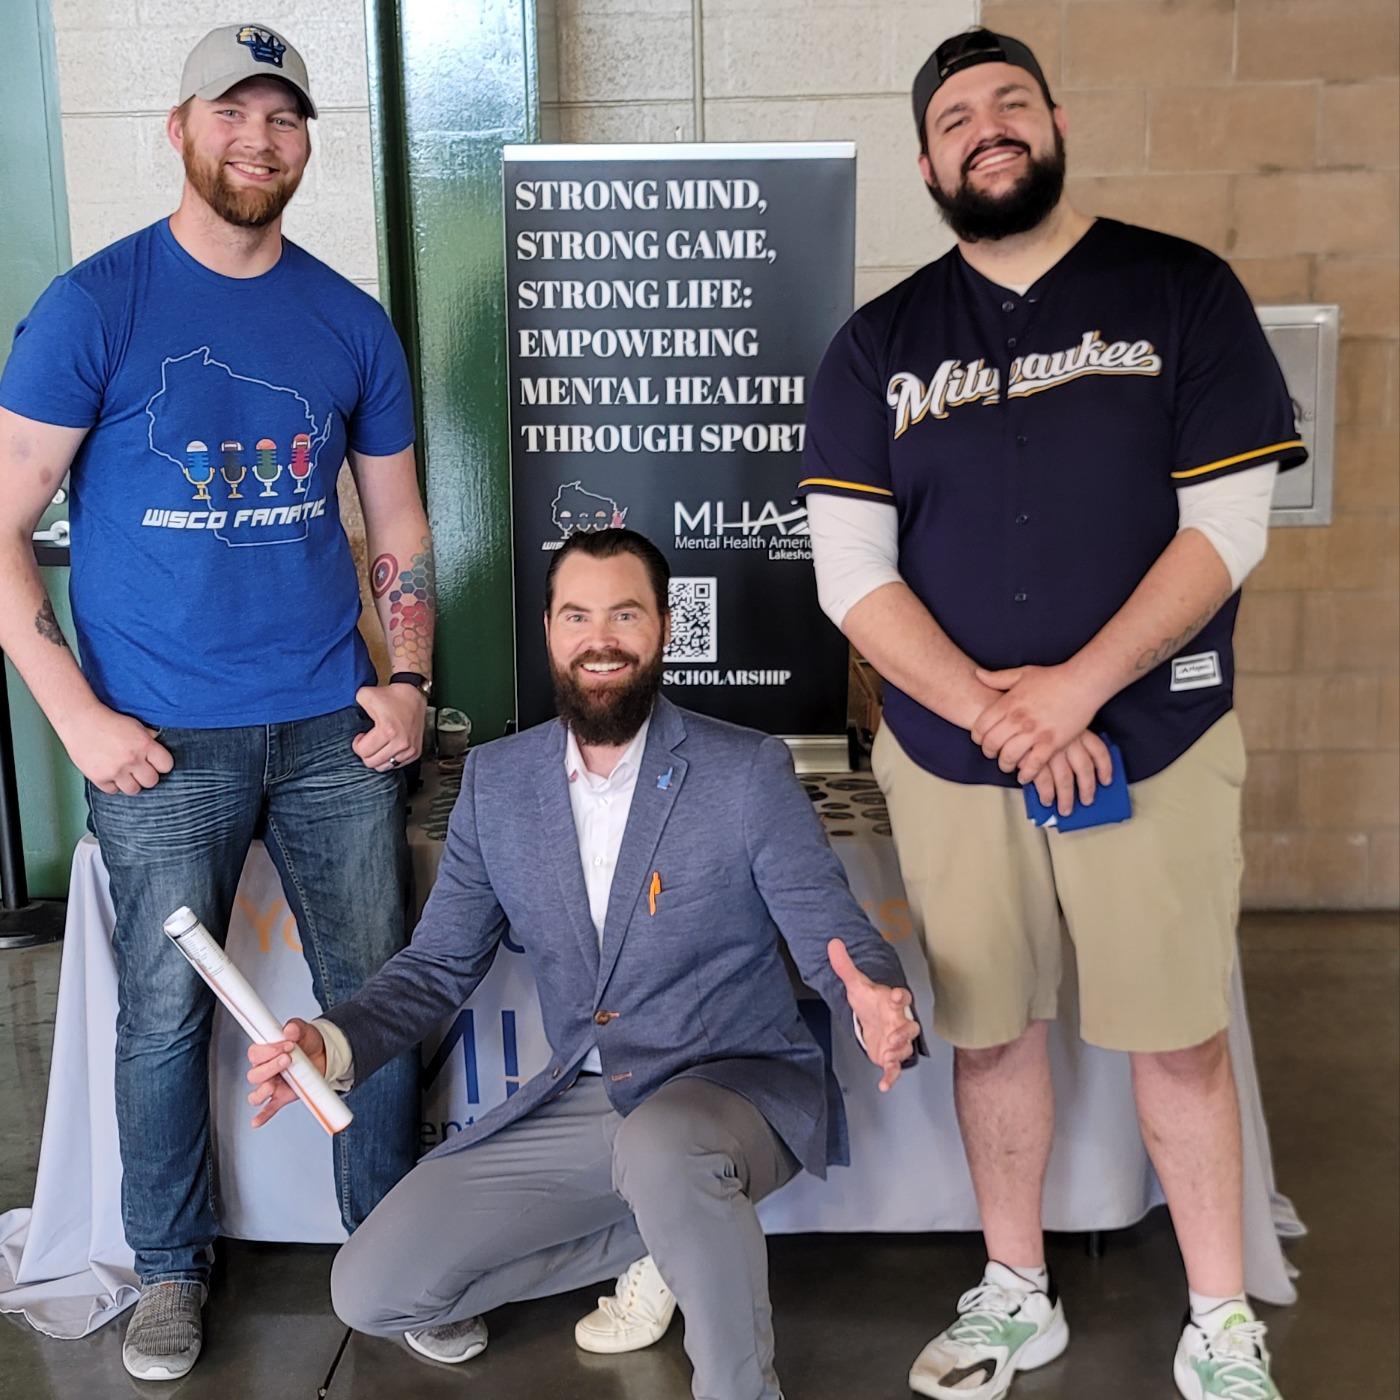 Wisco Fanatics - A Wisconsin Sports Podcast